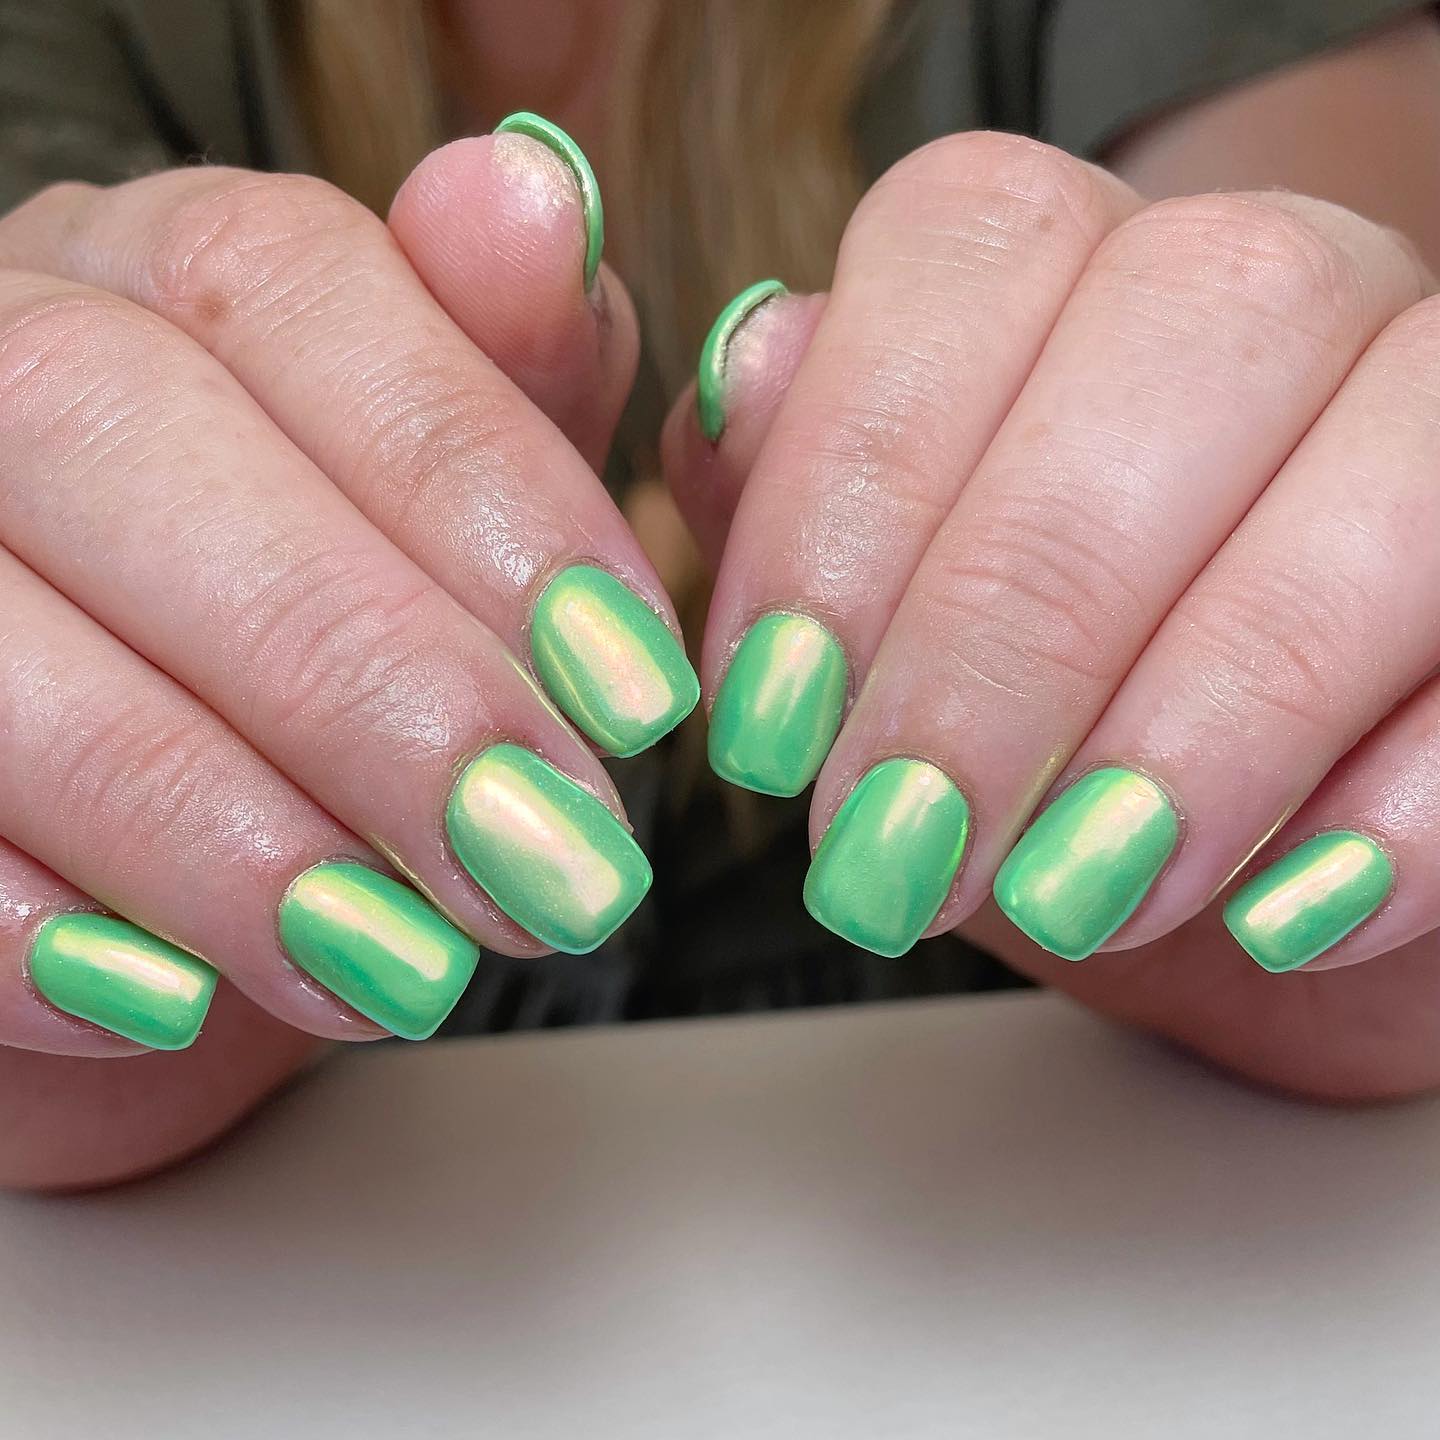 Todos los tonos de verde son perfectos, pero el verde claro es siempre el favorito. Para las uñas cortas, el esmalte cromado de color verde claro es una buena idea.